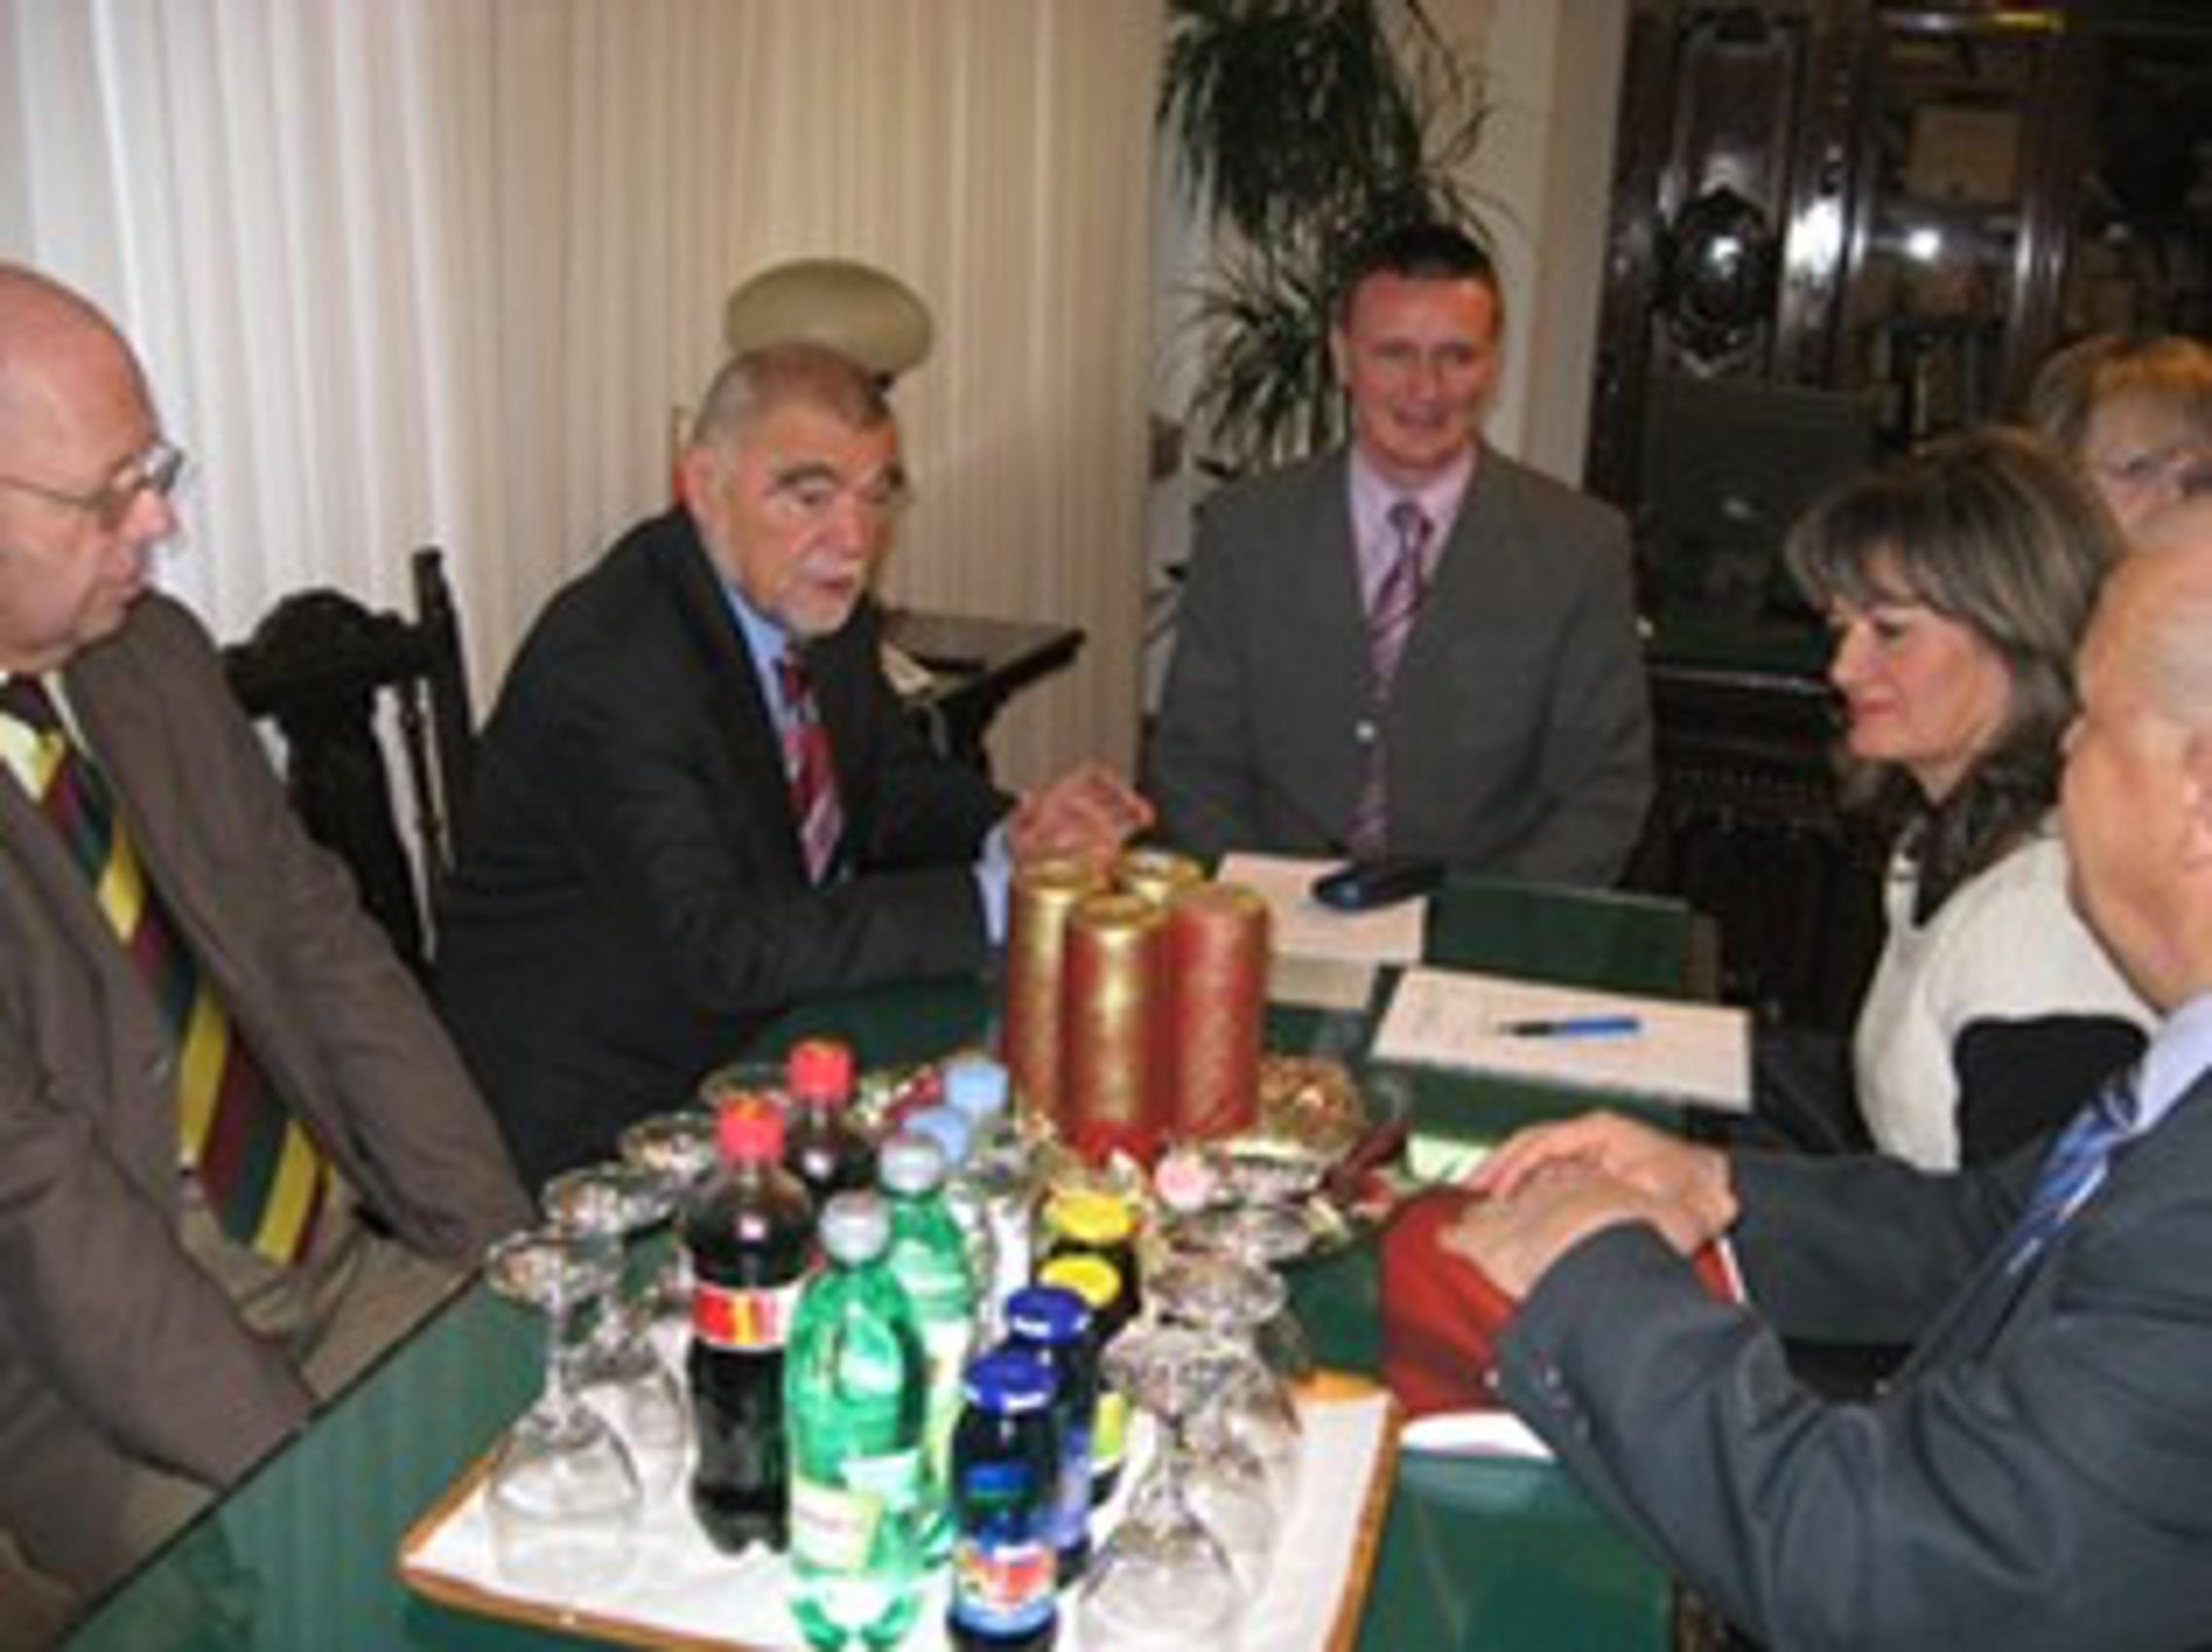 Stipe Mesić u susretu sa županijskim čelnicima